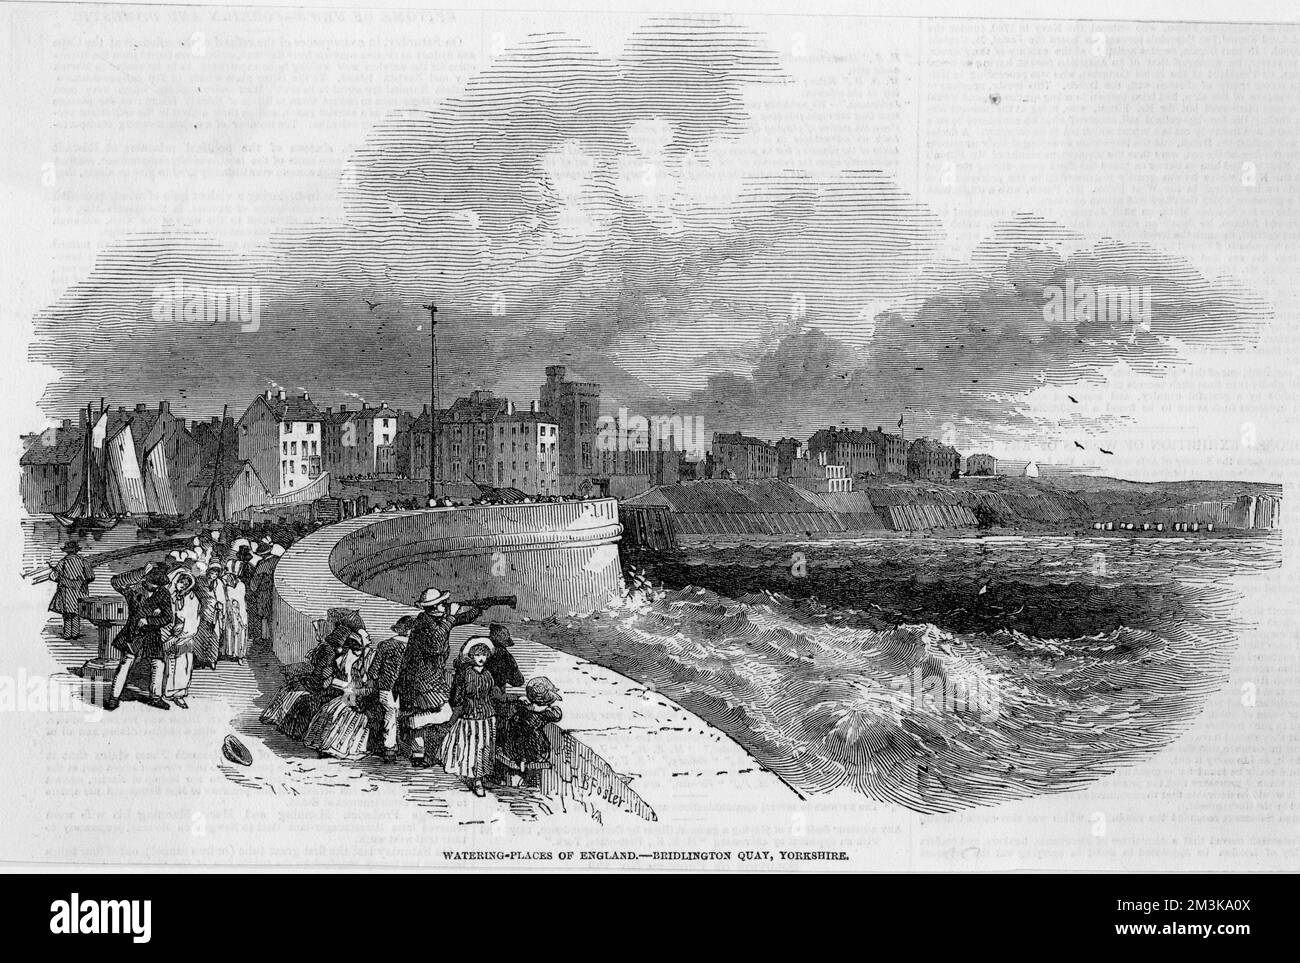 Le front de mer de Bridlington Quay, dans le Yorkshire, un lieu d'arrosage populaire. 1849 Banque D'Images